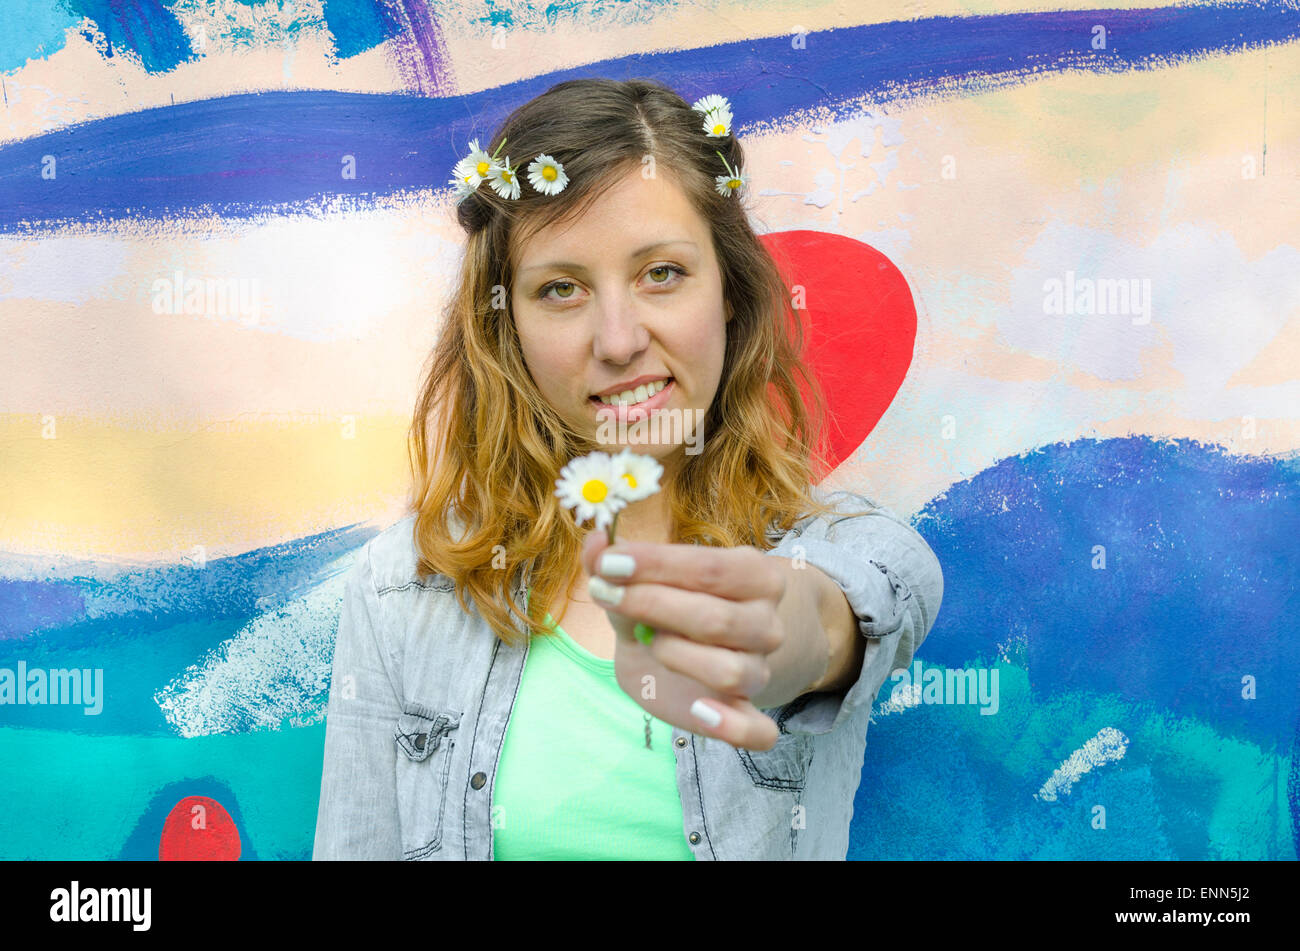 Brunette girl posing contre un fond coloré holding daisies Banque D'Images